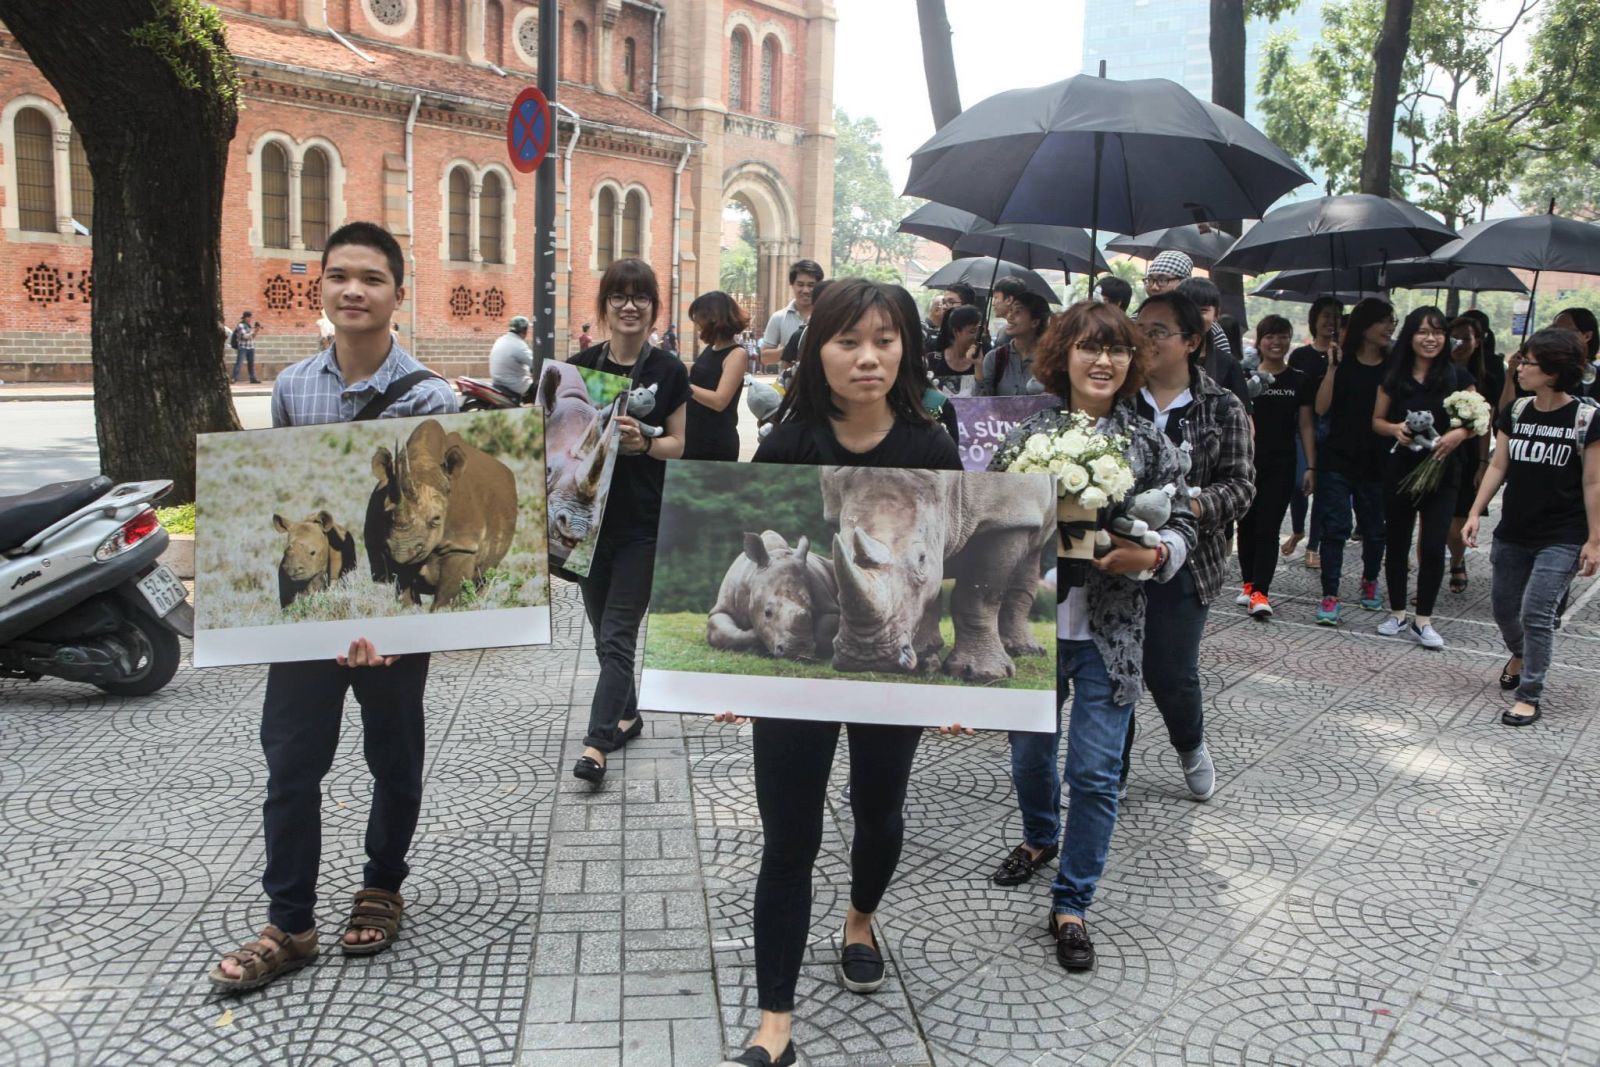 Giới trẻ Sài Gòn dùng nghệ thuật đưa thông điệp bảo vệ Tê giác nhân ngày Tê giác Thế giới